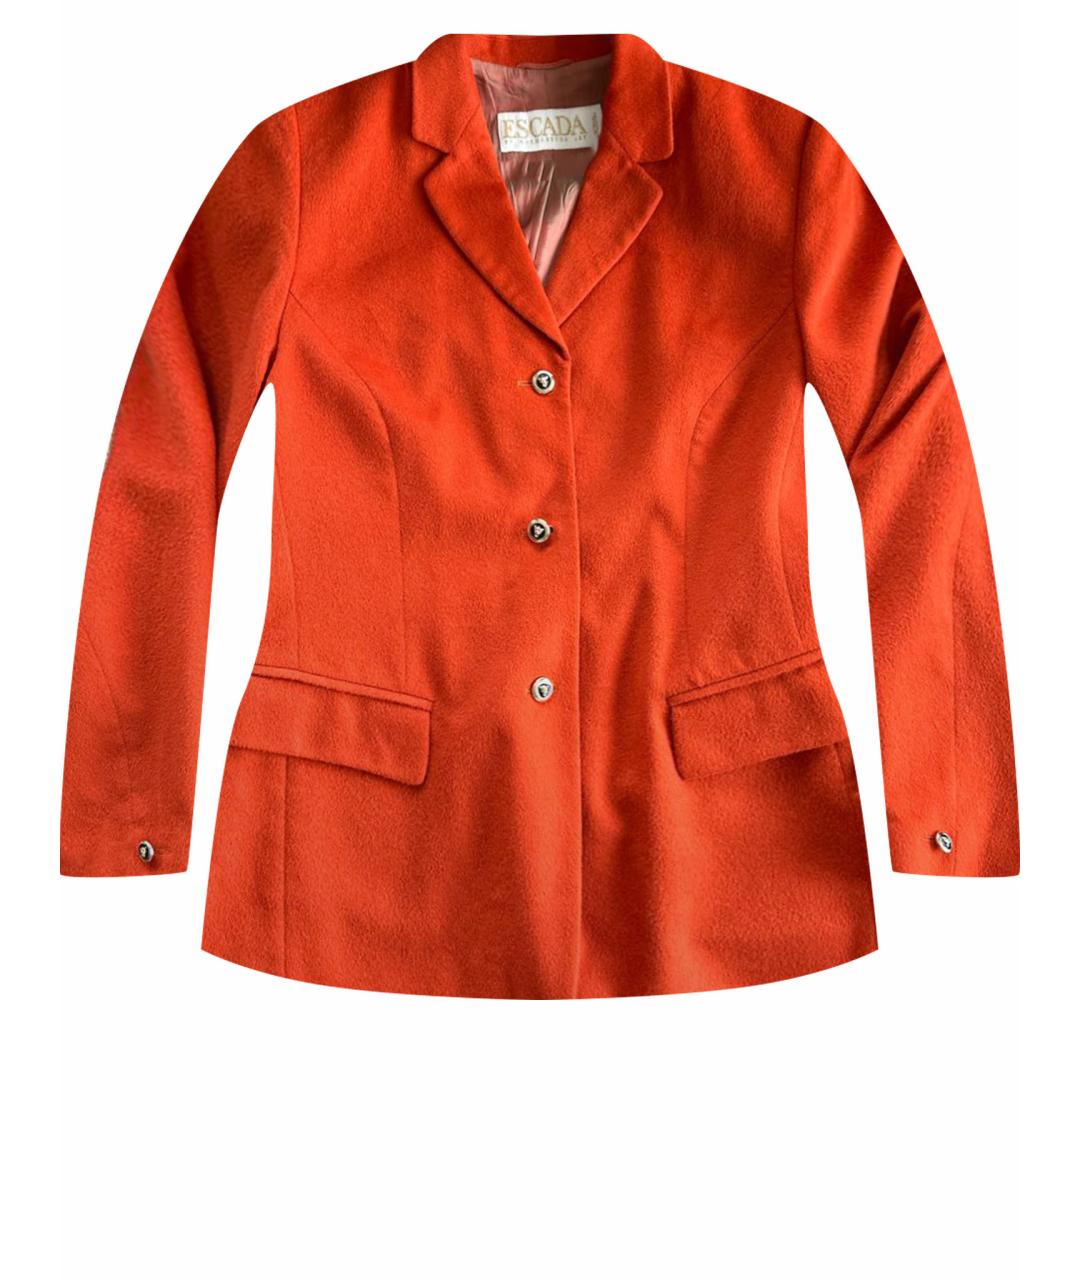 ESCADA Оранжевый шерстяной жакет/пиджак, фото 1